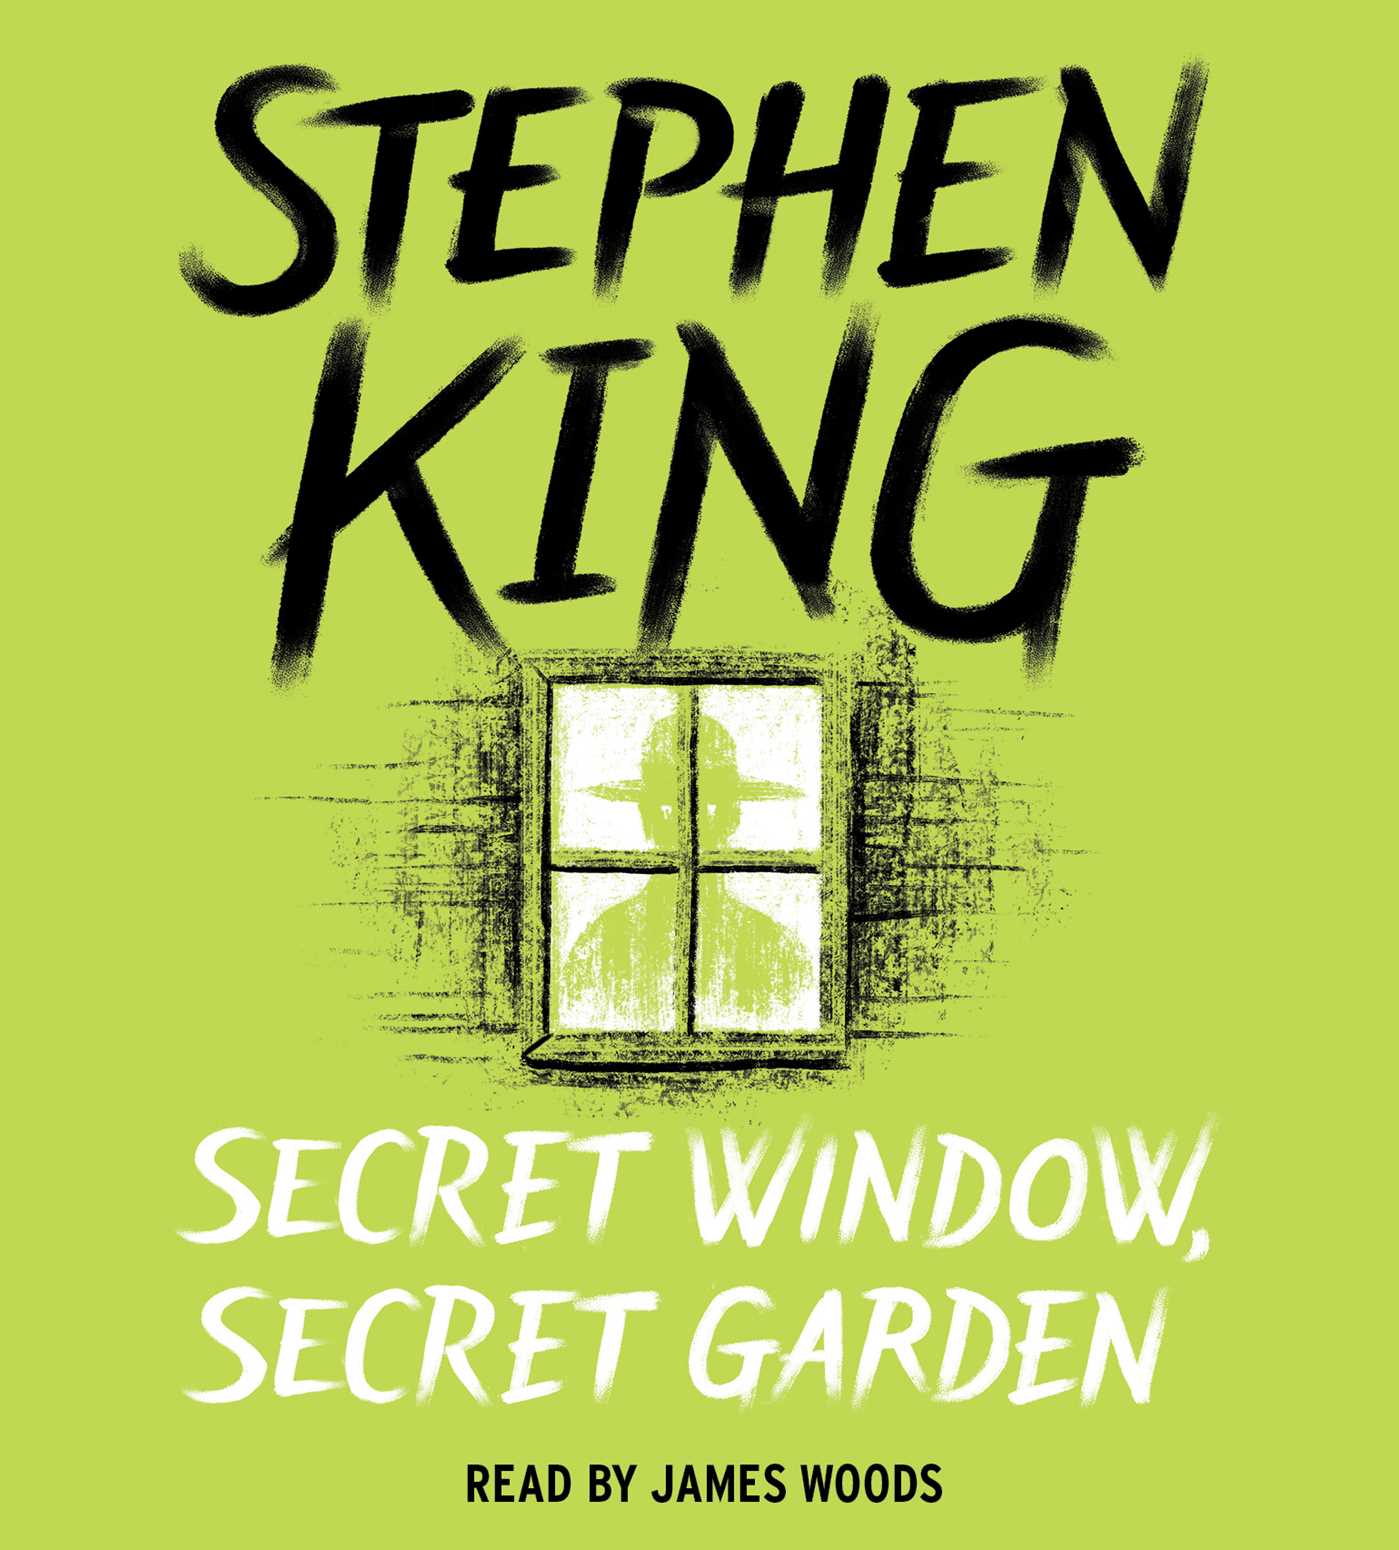 Secret Window, Secret Garden | Stephen King Wiki | Fandom